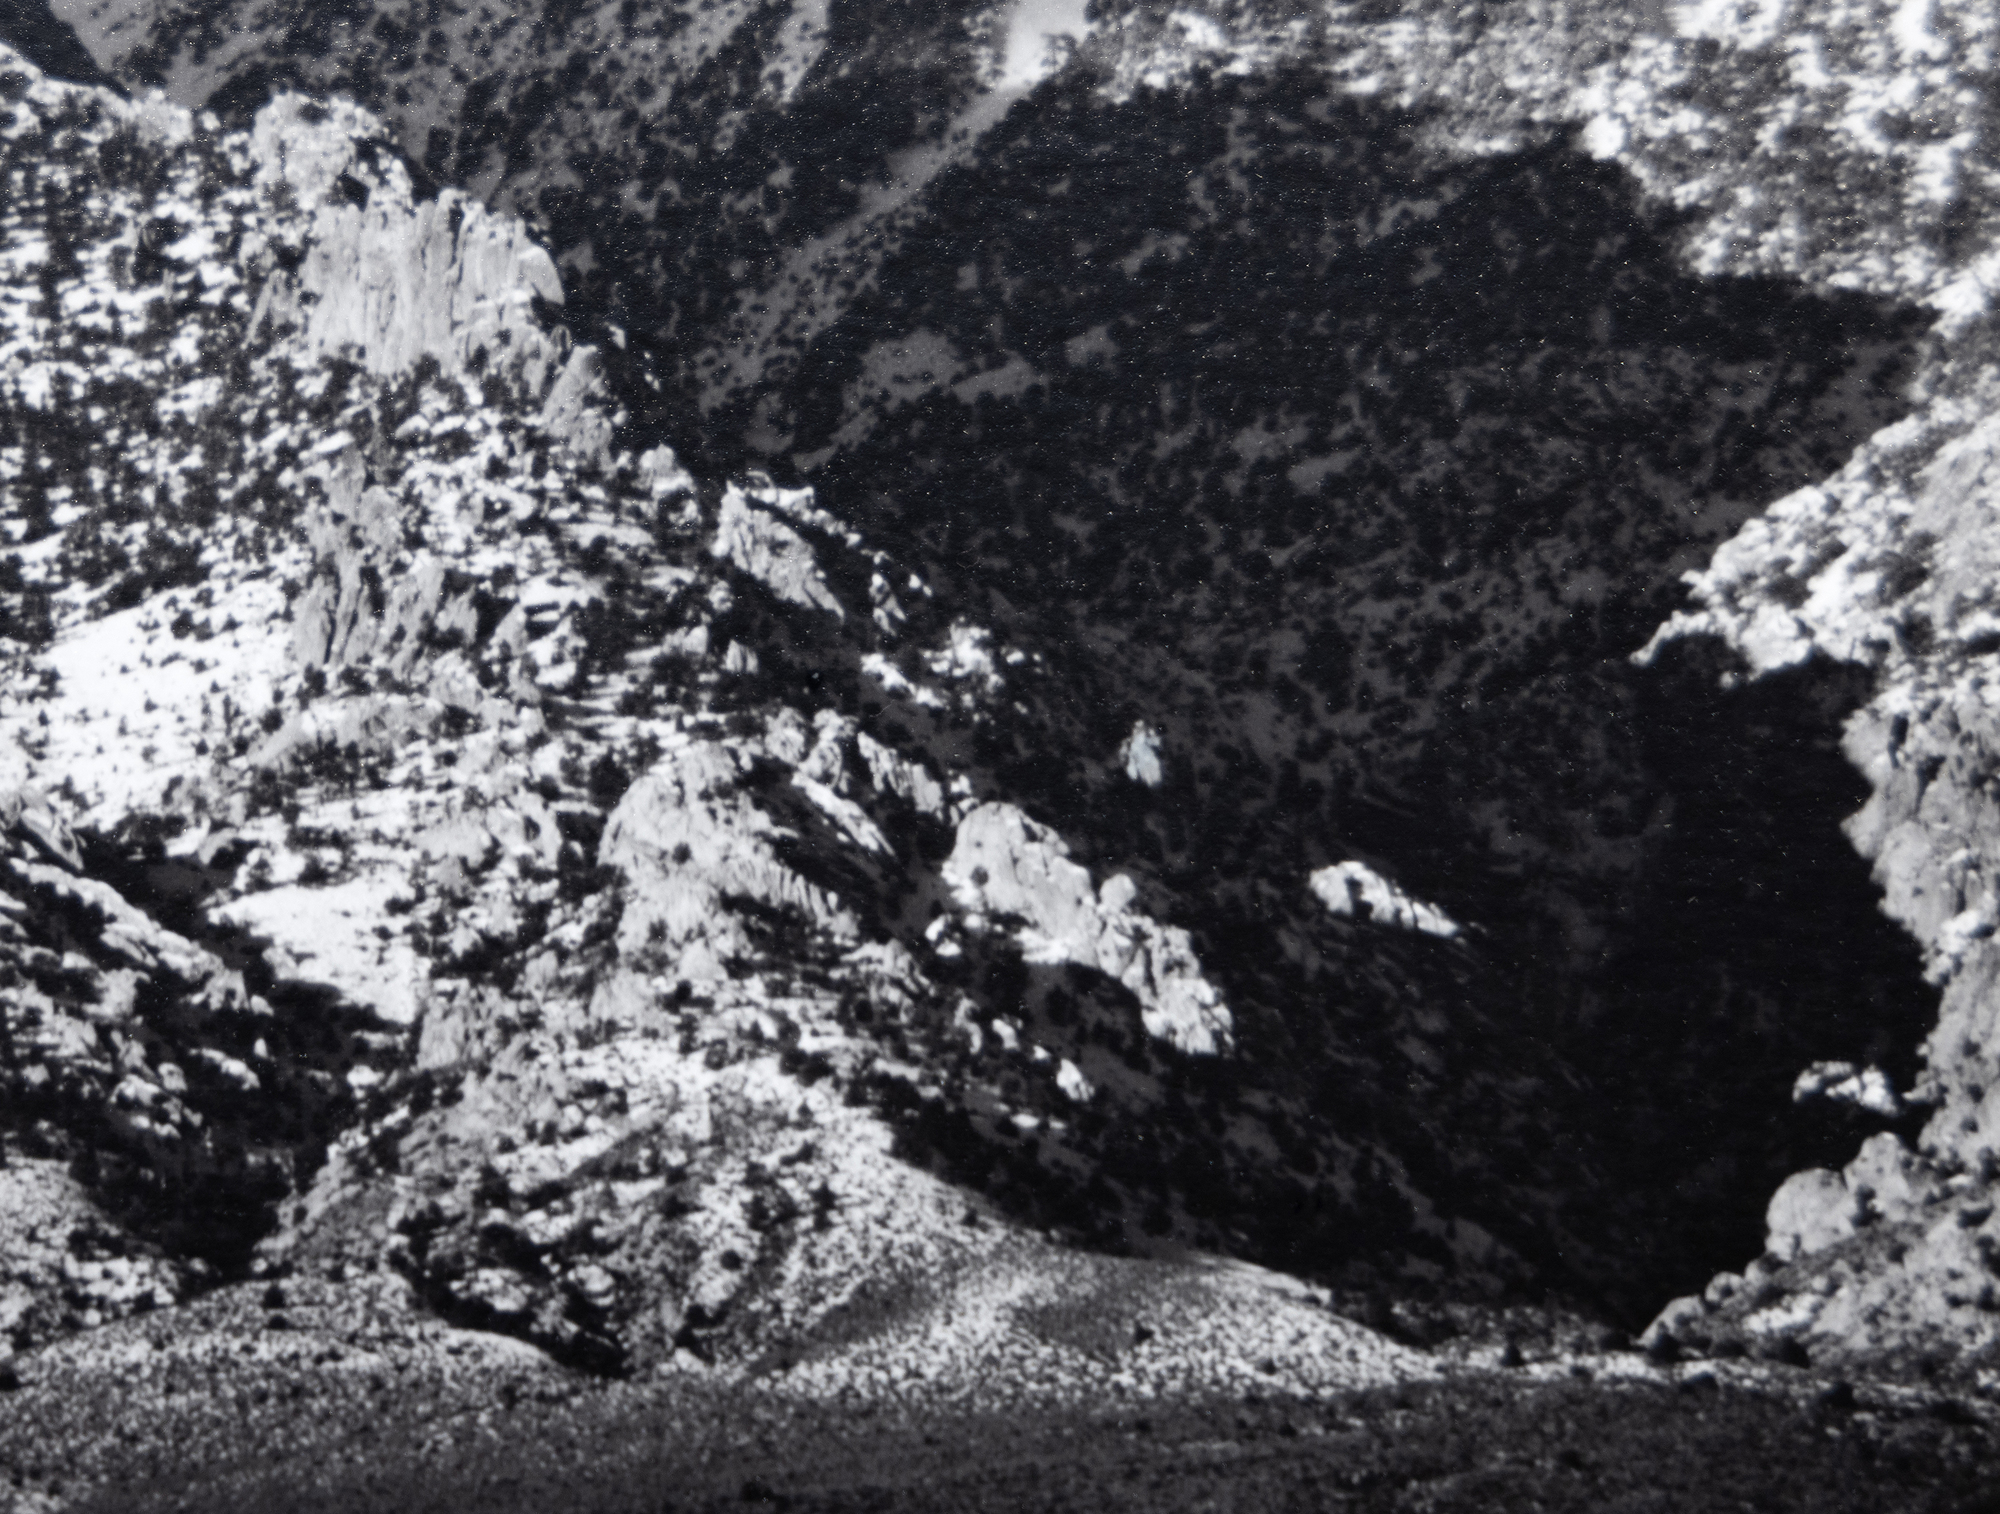 לחקירתו של אנסל אדמס את עמק אוונס ולנופים של הצד המזרחי המתנשא של הרי סיירה נבדה יש משמעות עצומה. הם בין התצלומים האיקוניים ביותר שאפשרו לאדמס ללכוד את ההוד הסוחף של סיירה נבאדה תוך מתן רושם חי של העומק והמרחב של קרקעית העמק הצחיח. הר ויליאמסון, סיירה נבאדה, מעמק אוונס, צולם ככל הנראה בשנת 1944, זמן קצר לאחר שילוב מערכת Zone שאפשרה טווח גוונים רחב וחשיפה מאוזנת עם בהירות הן באור והן בצל. הדוגמה הנוכחית, שהודפסה באוגוסט 1978, נמצאת באוסף של מוזיאונים רבים, אך בקרב אספנים היא בין ההדפסים הנדירים יותר של אנסל אדמס.